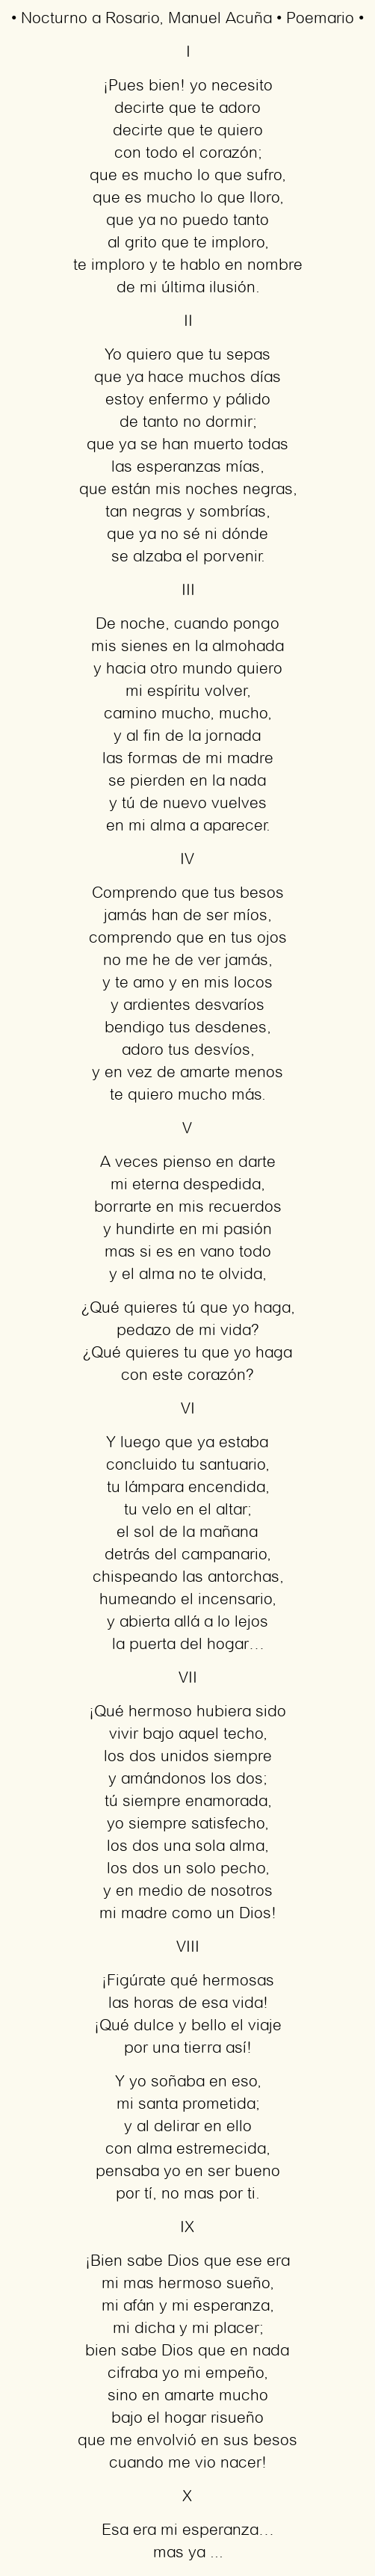 Descarga gratuita del PDF del Poema Nocturno a Rosario de Manuel Acuña: Una joya literaria para disfrutar en las horas más oscuras